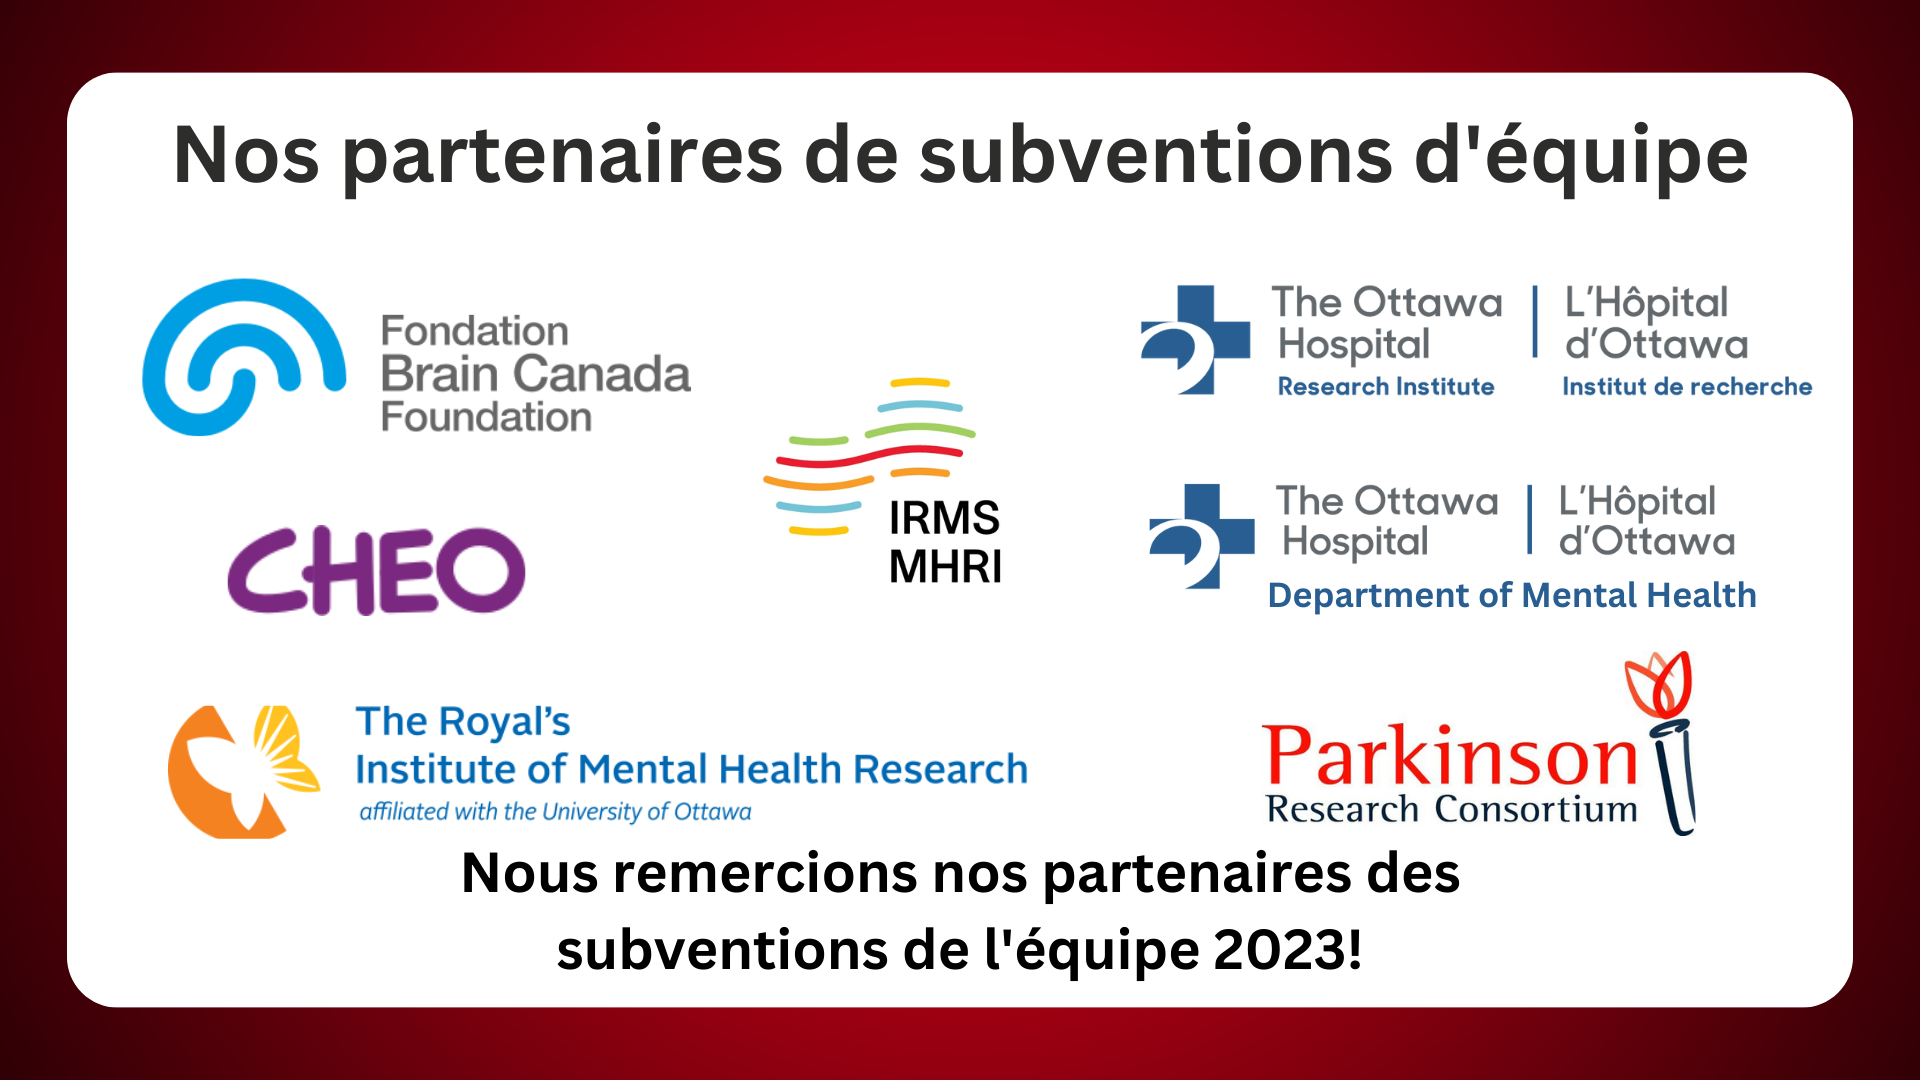 Texte indiquant « Nos partenaires de subvention d'équipe » avec des logos pour la Fondation Brain Canada, Cheo, l'Institut royal de recherche en santé mentale, MHRI, le Consortium de recherche Parkinson, l'hôpital d'Ottawa et le département de santé mentale de l'hôpital d'Ottawa.